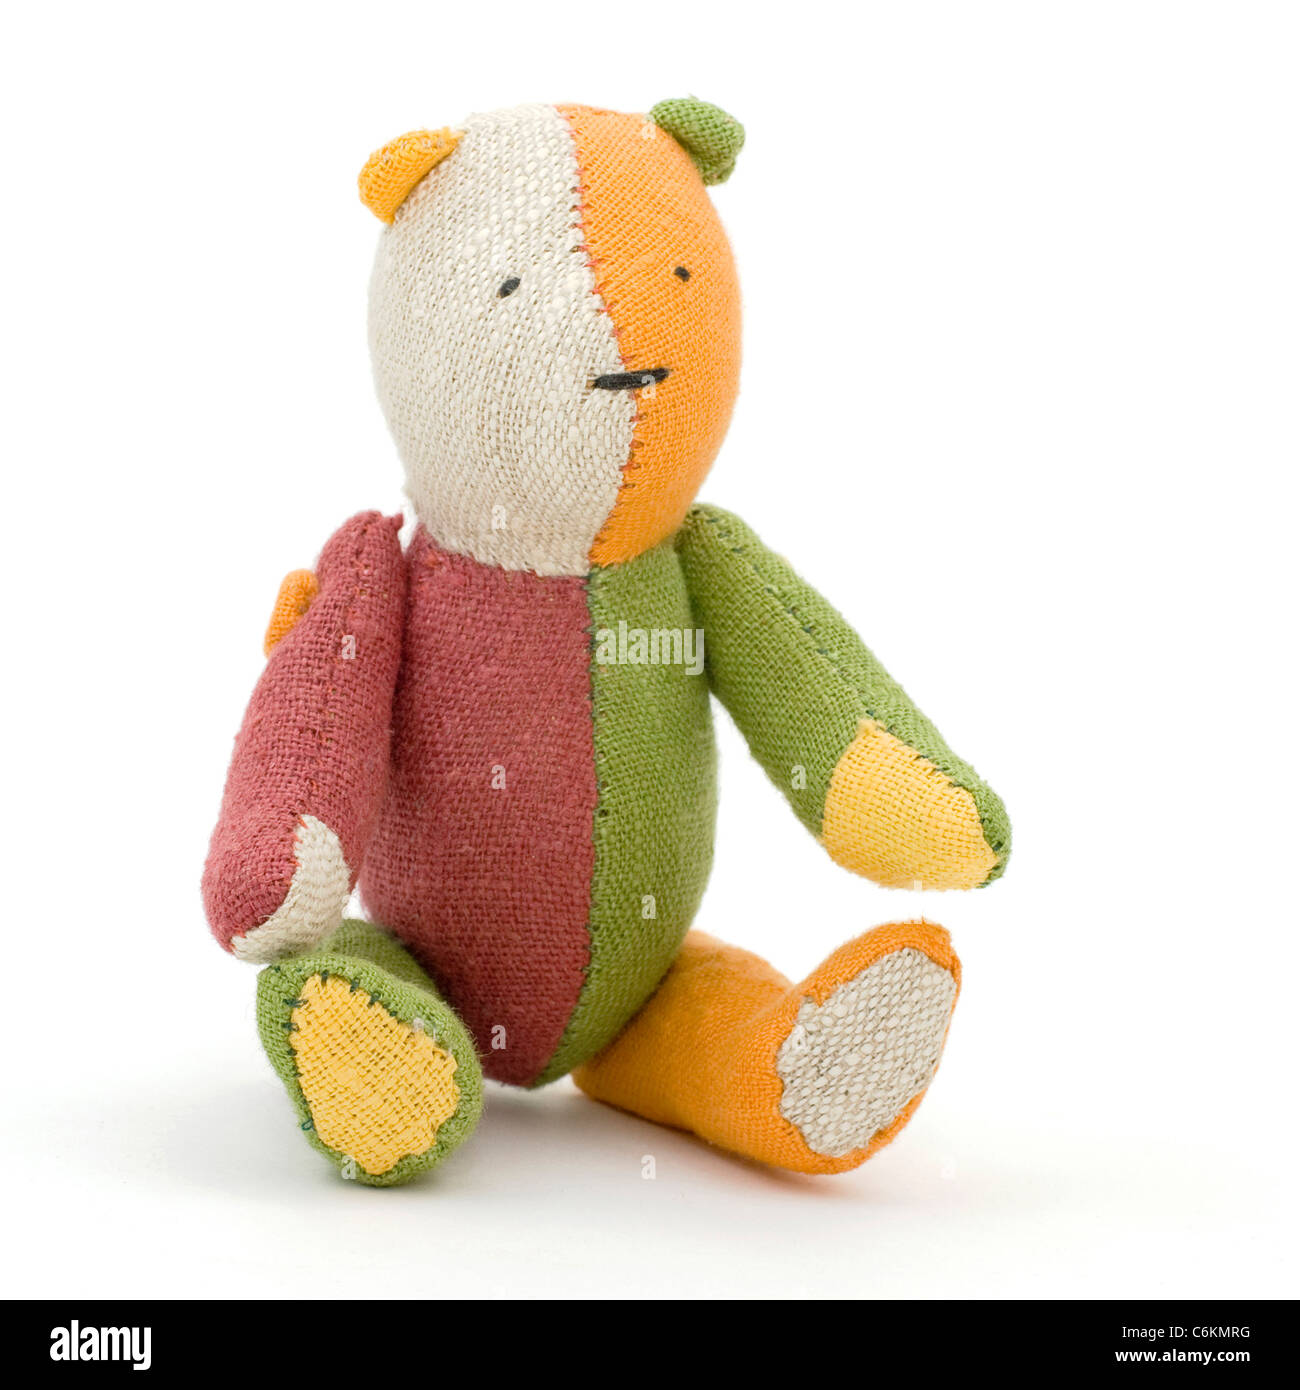 rag bear toy Stock Photo - Alamy